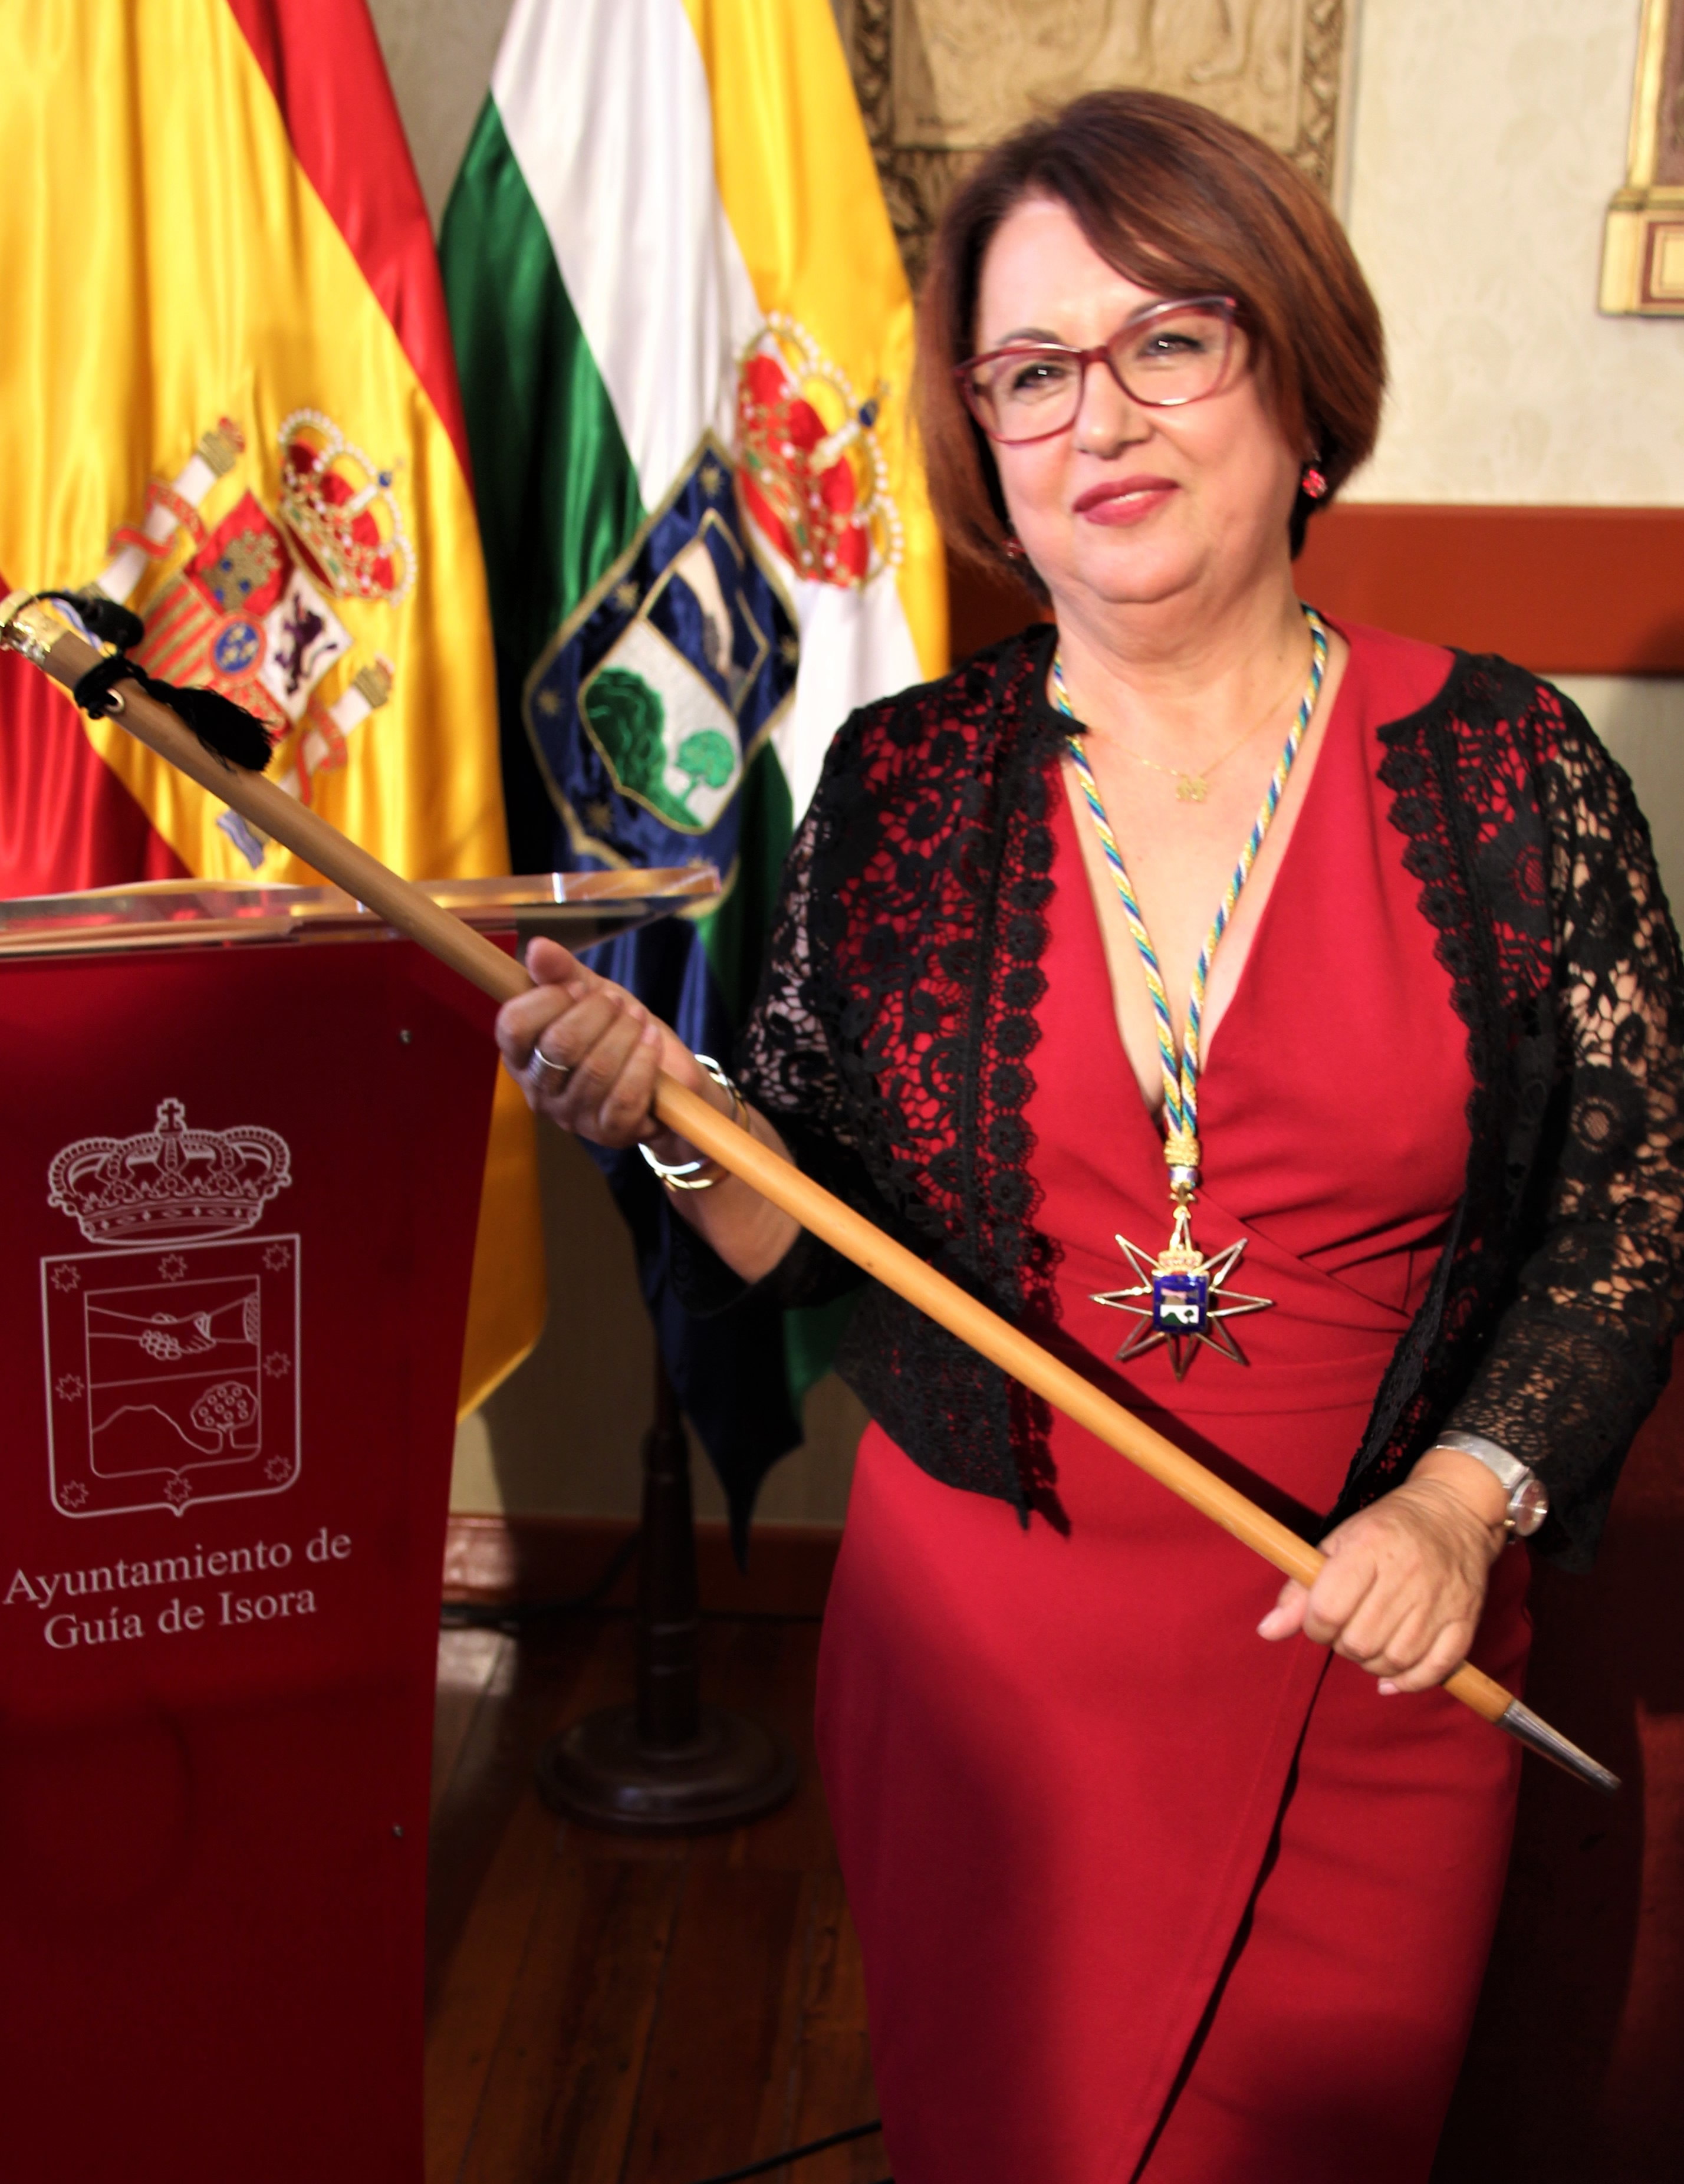 Josefa María Mesa Mora